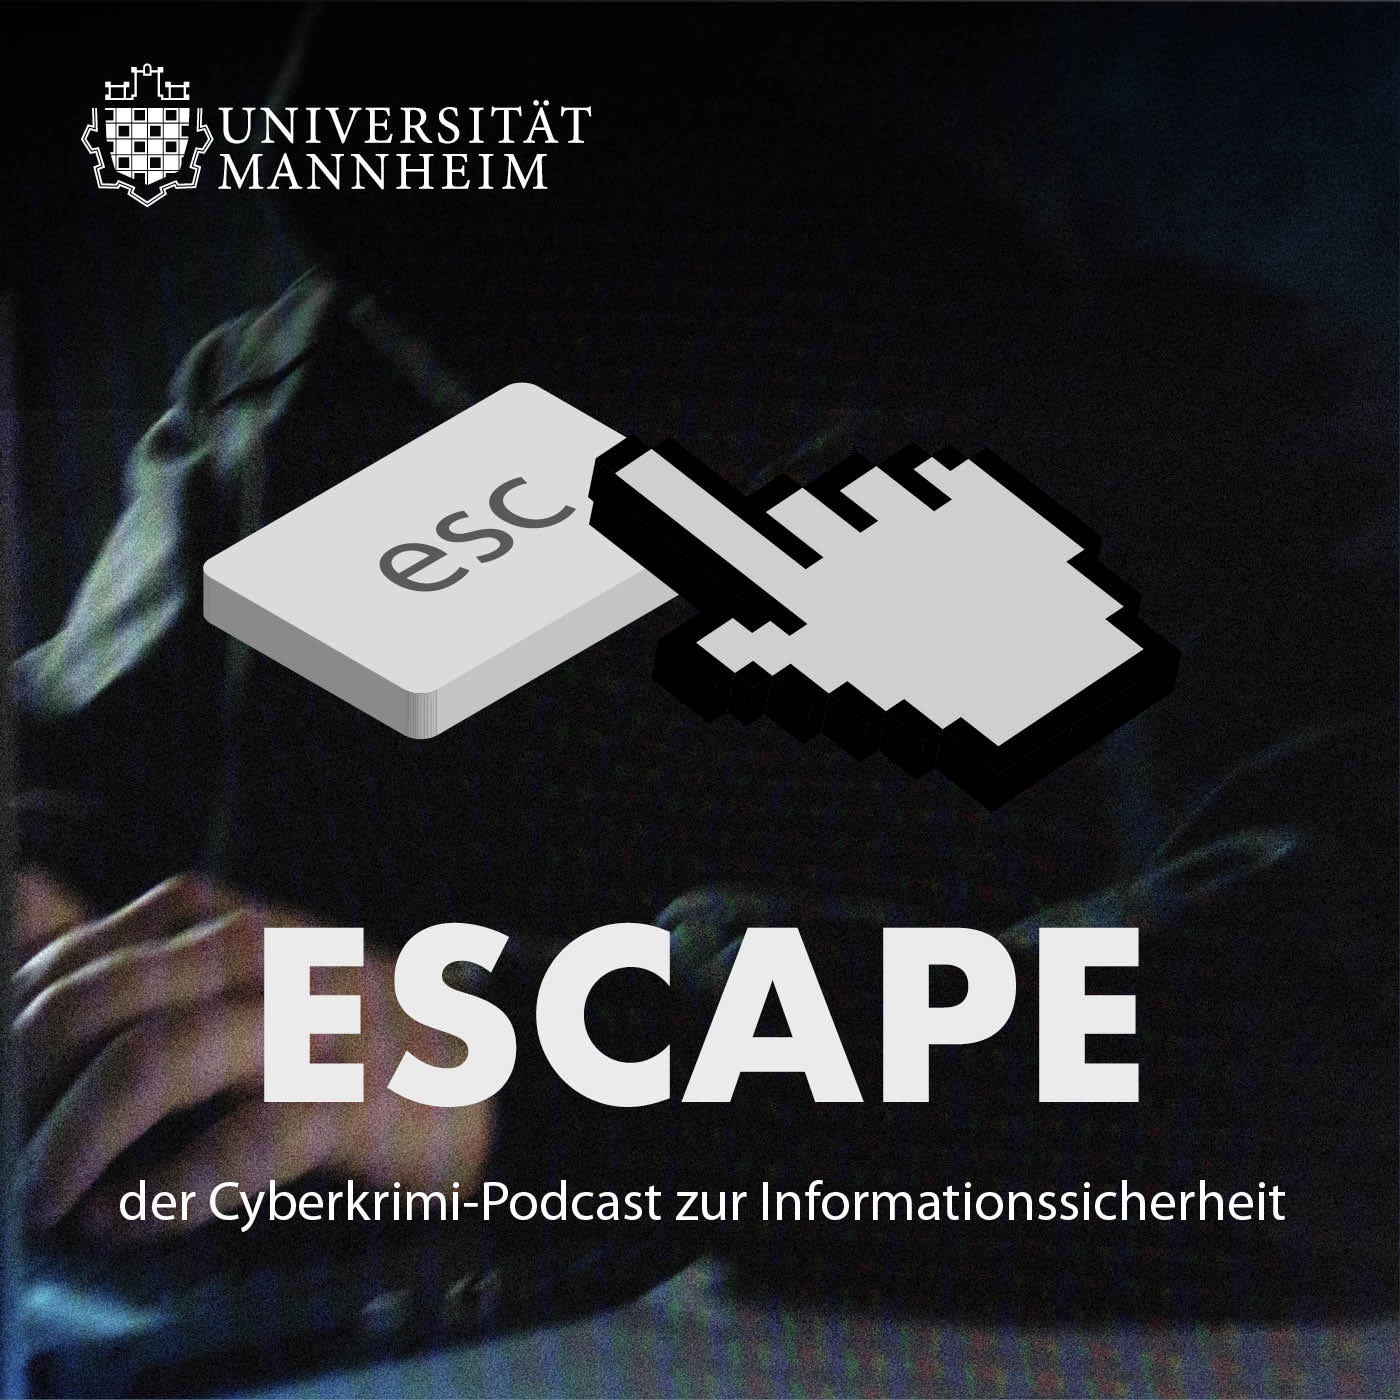 ESCAPE – Der Cyberkrimi-Podcast zur Informationssicherheit